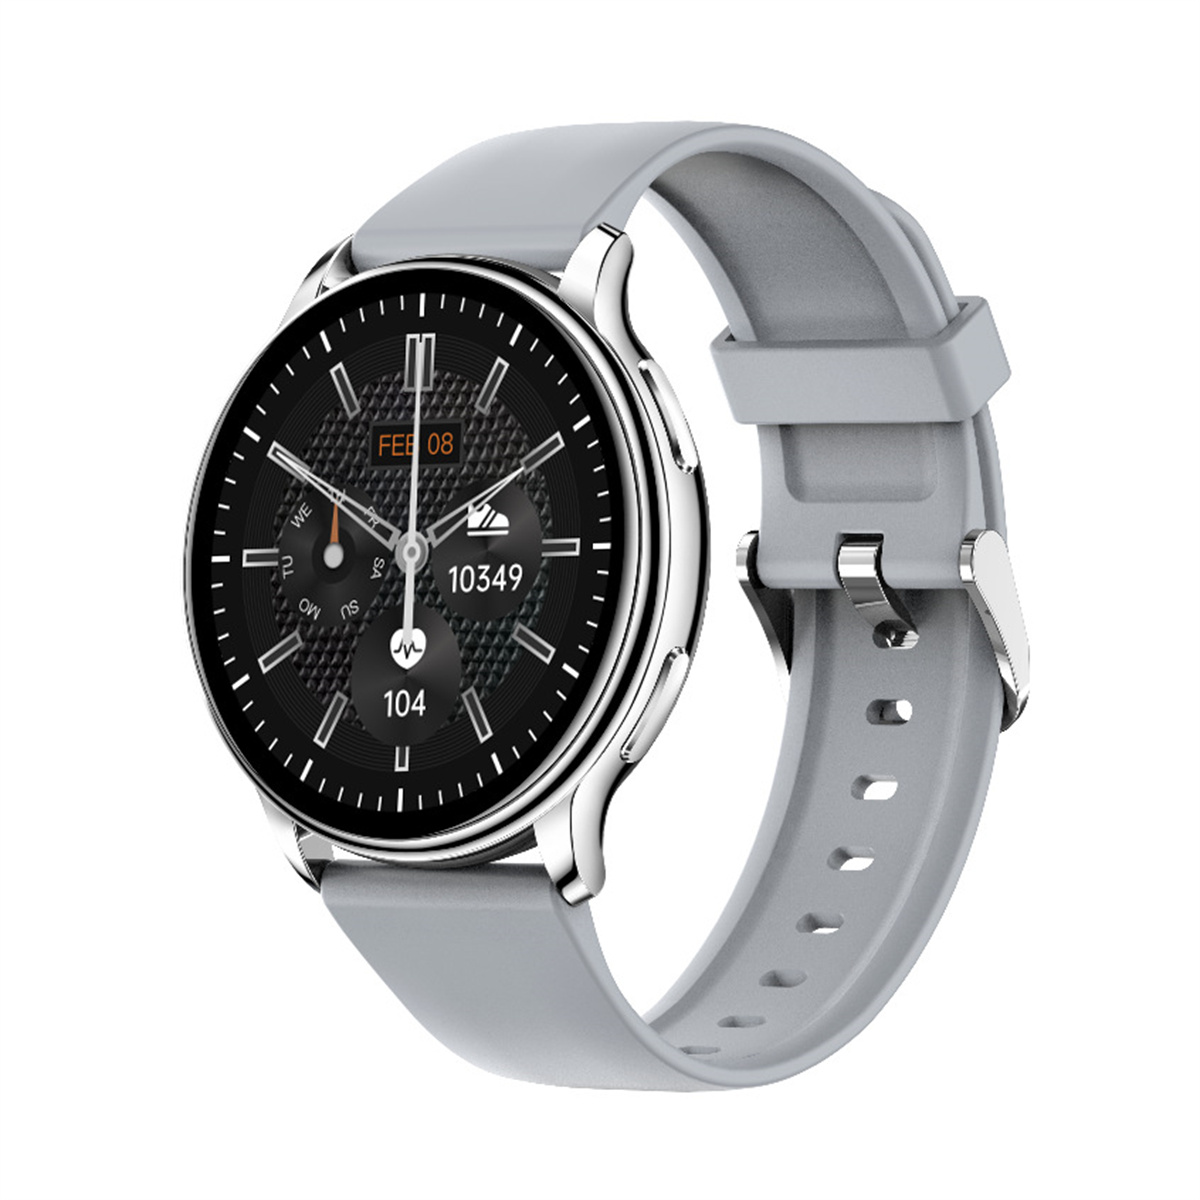 Echtzeit, Herzfrequenzmessung Smartwatch Y33 Smartwatch ENBAOXIN Multisport-Modus - Rosa in Silikon,